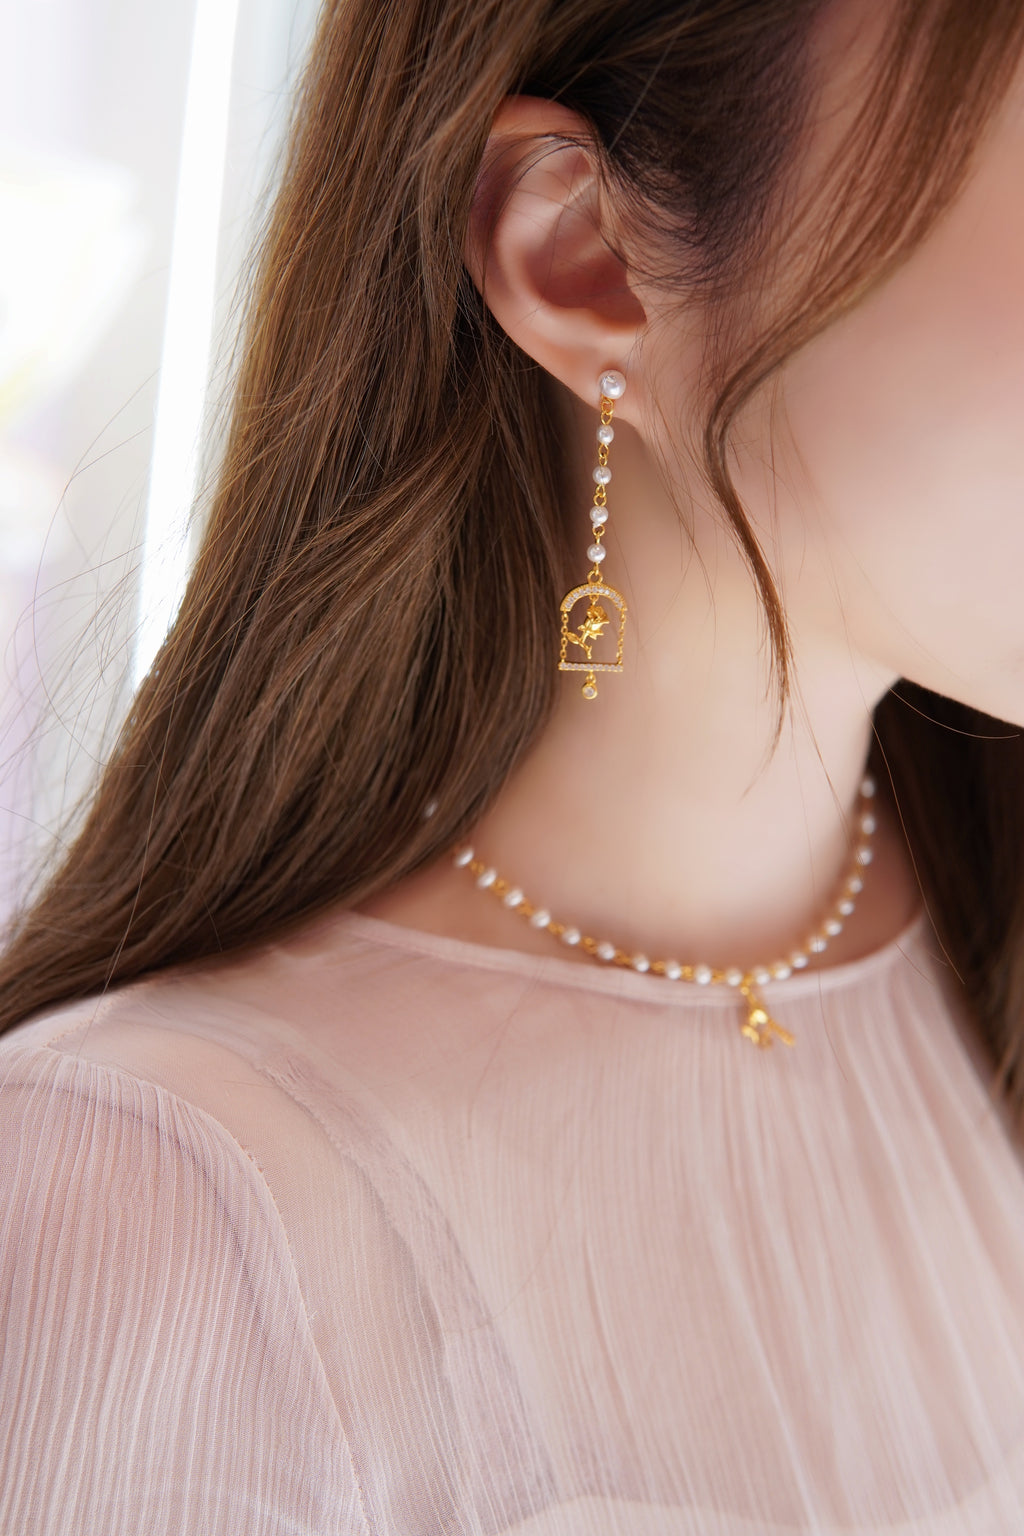 LAFIT  · Rose Castle - Earrings 玫瑰花藝雕刻畫珍珠款耳環